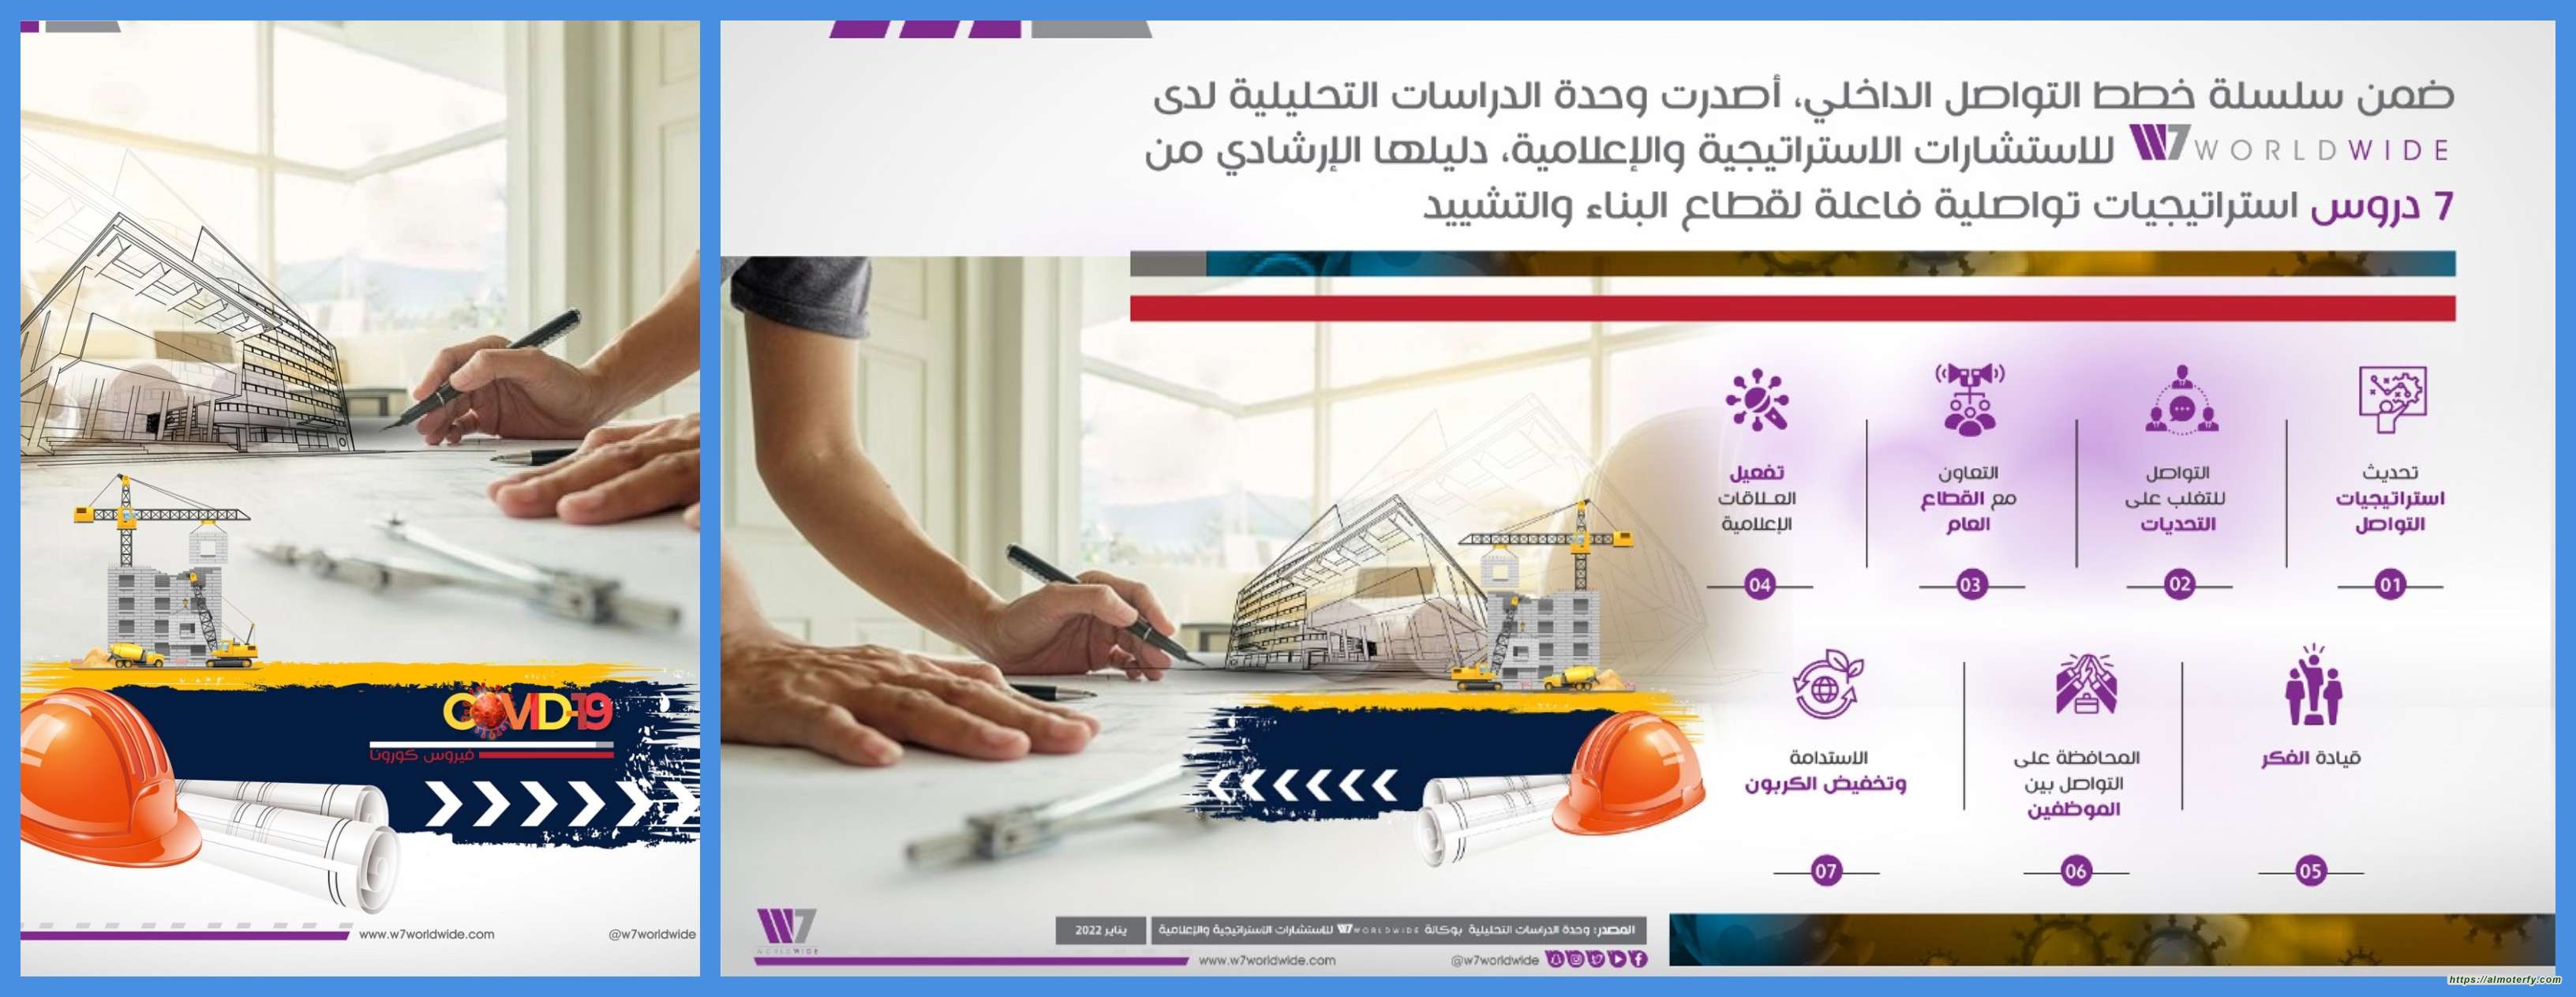 توقع نمو سوق البناء والتشييد السعودي بنسبة 5.2%